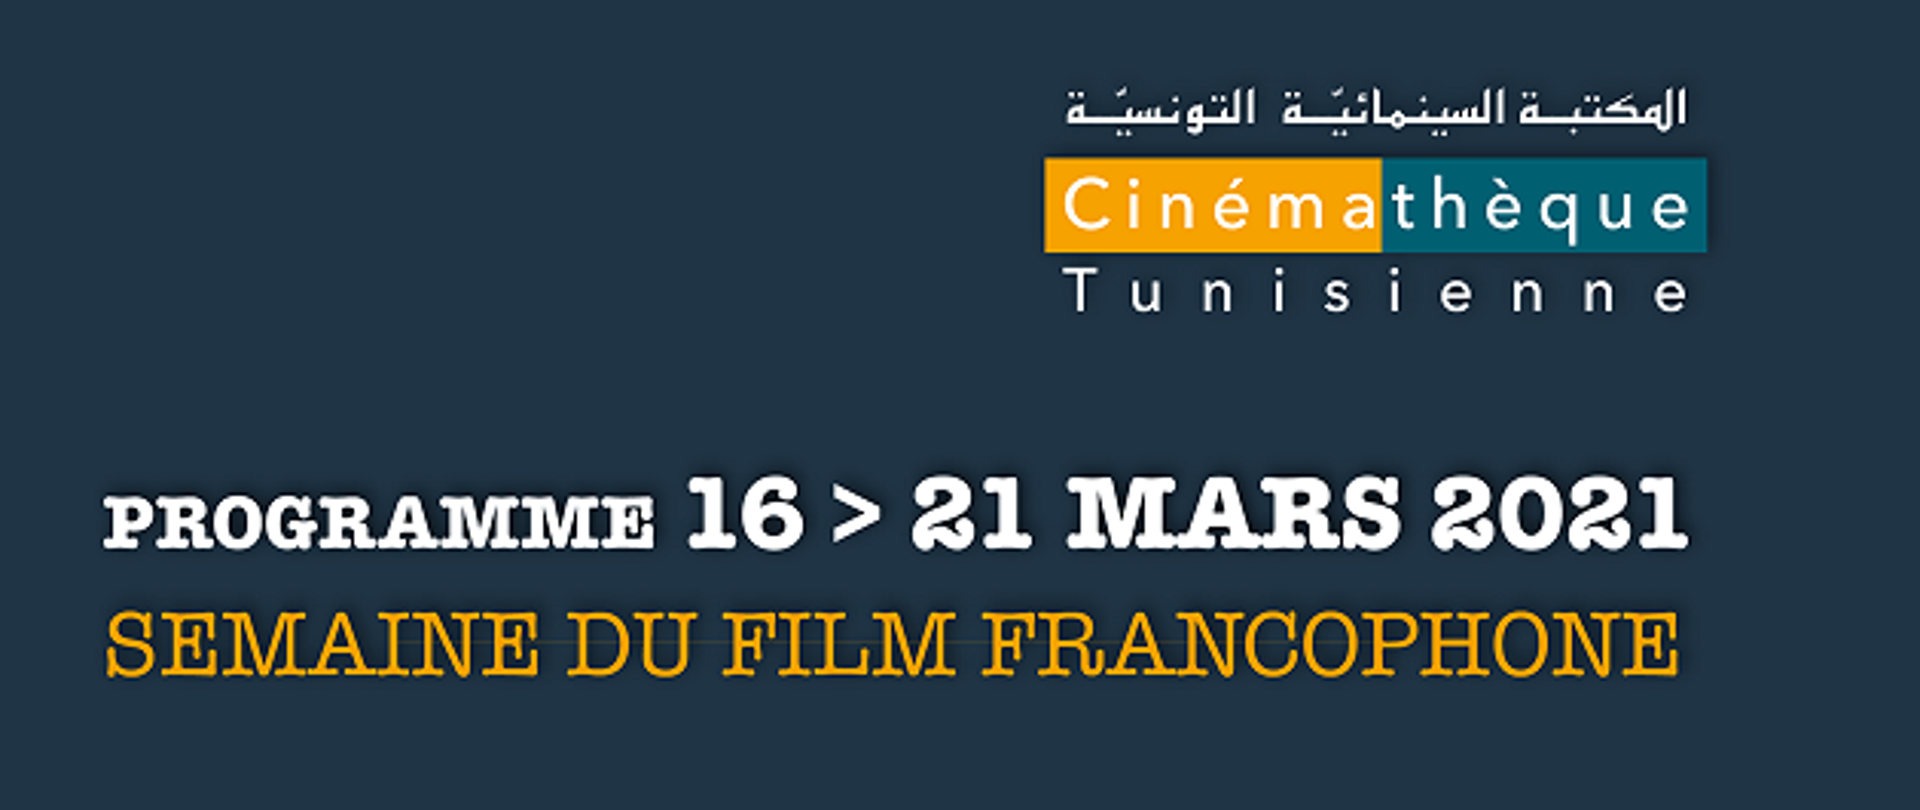 semaine_du_film_francophone